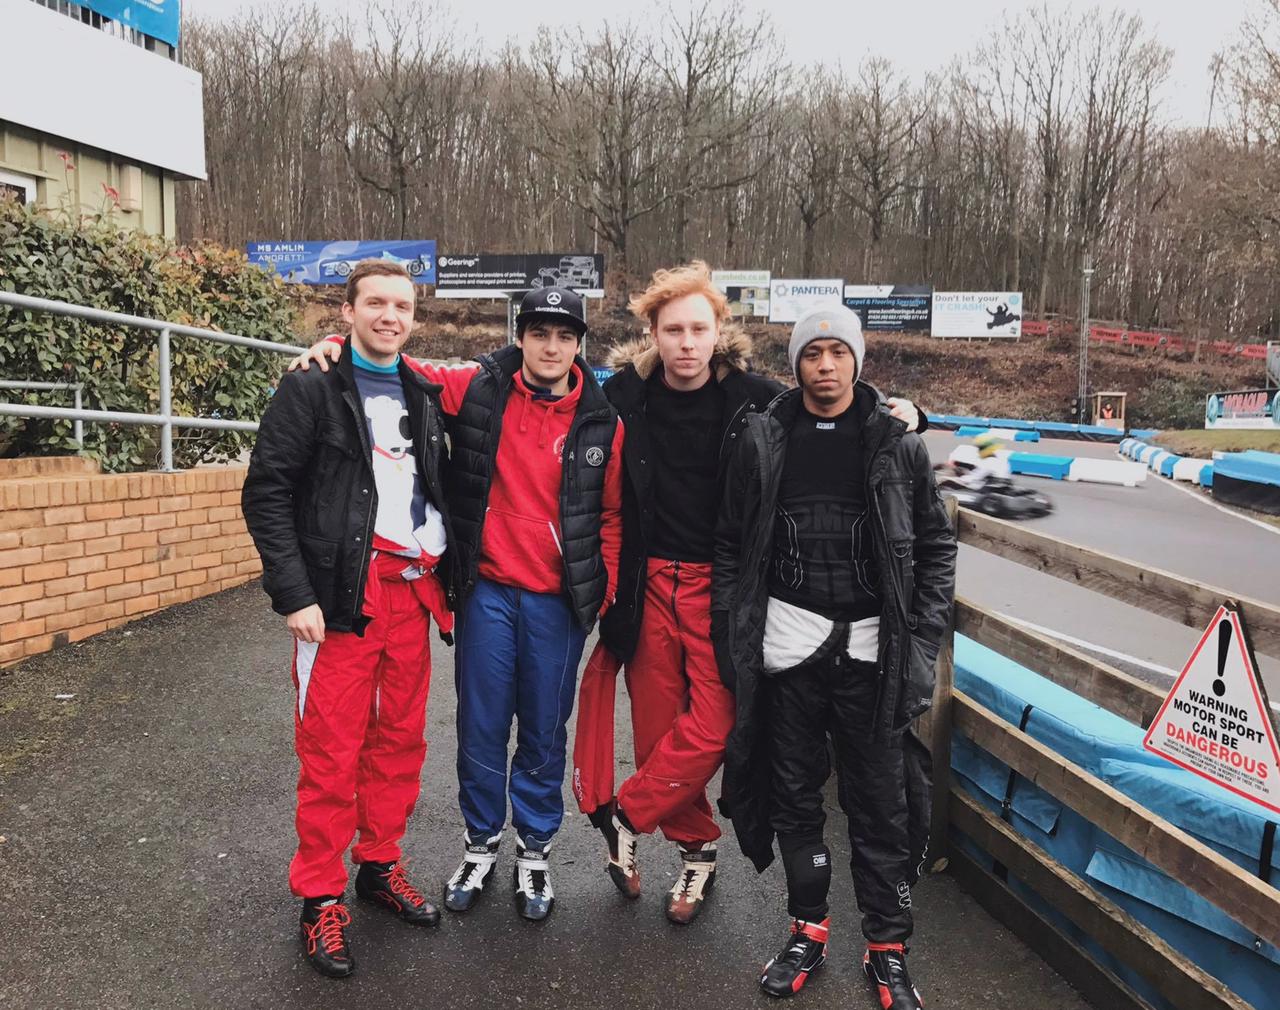 Marrel bersama teman-teman klub balapnya di Inggris